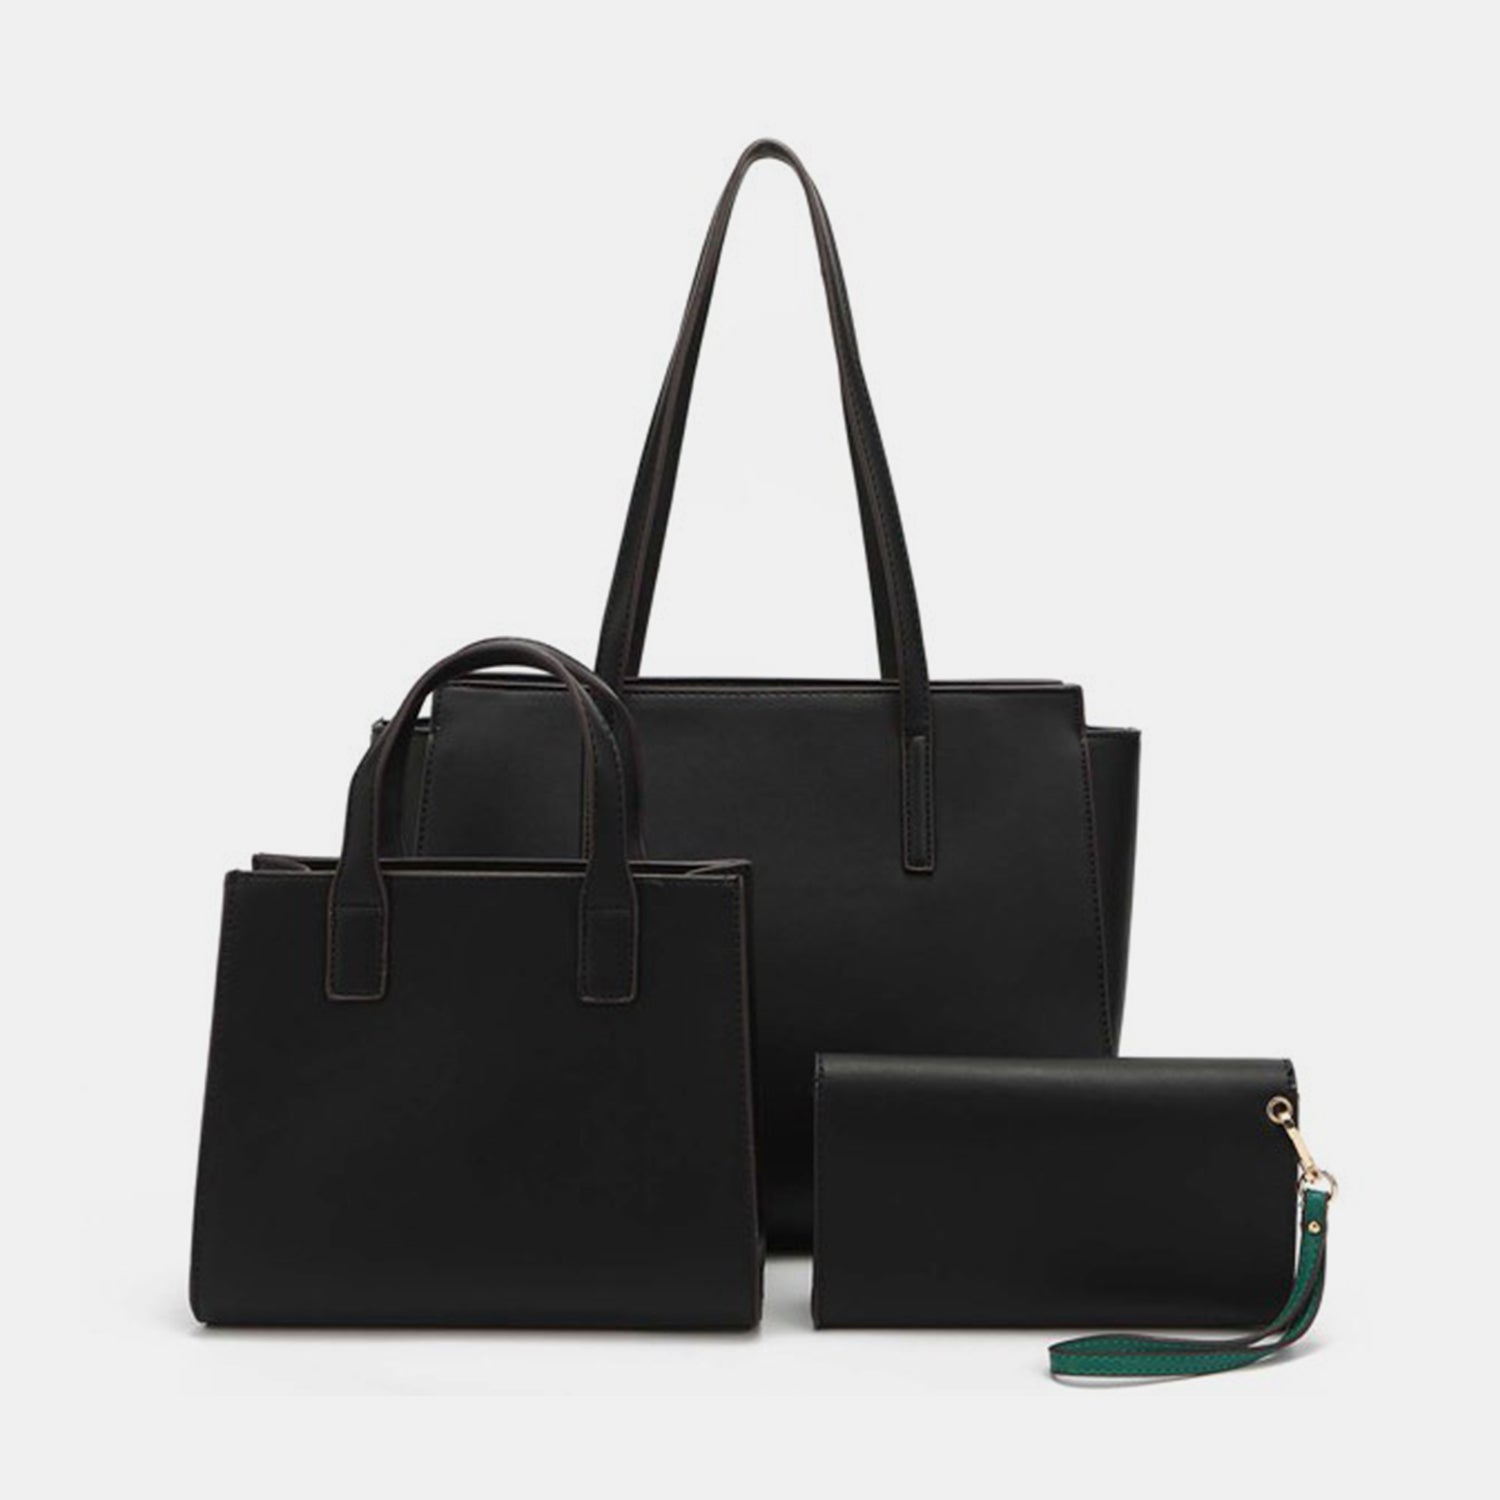 3-Piece Color Block Handbag Set